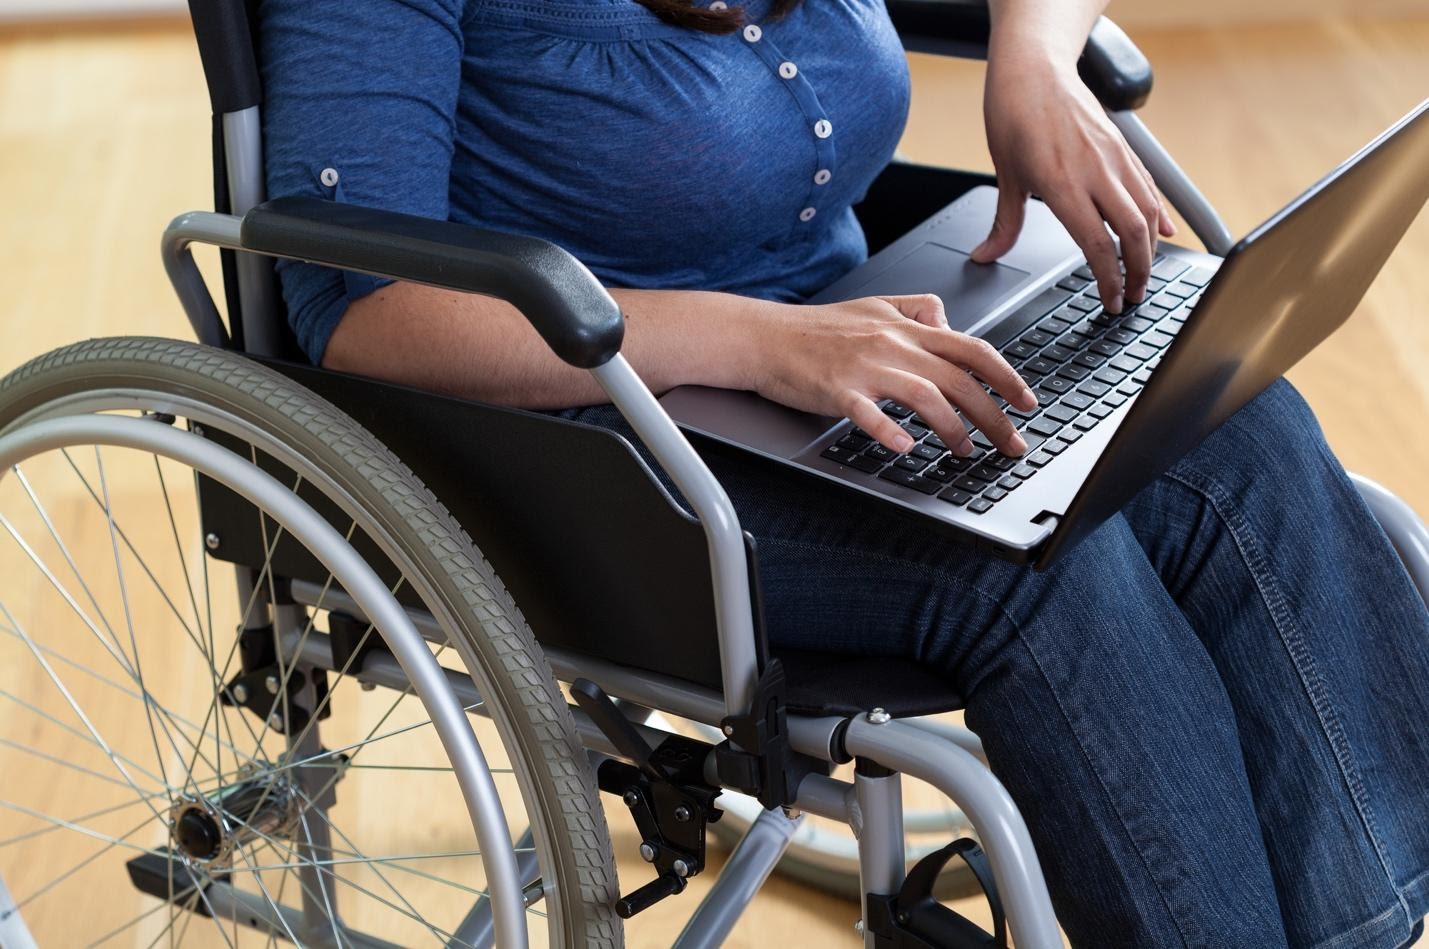 Реабилитация группы инвалидности. Инвалид. Люди с ограниченными физическими возможностями. Интернет для инвалидов. Лица с ограниченными возможностями.